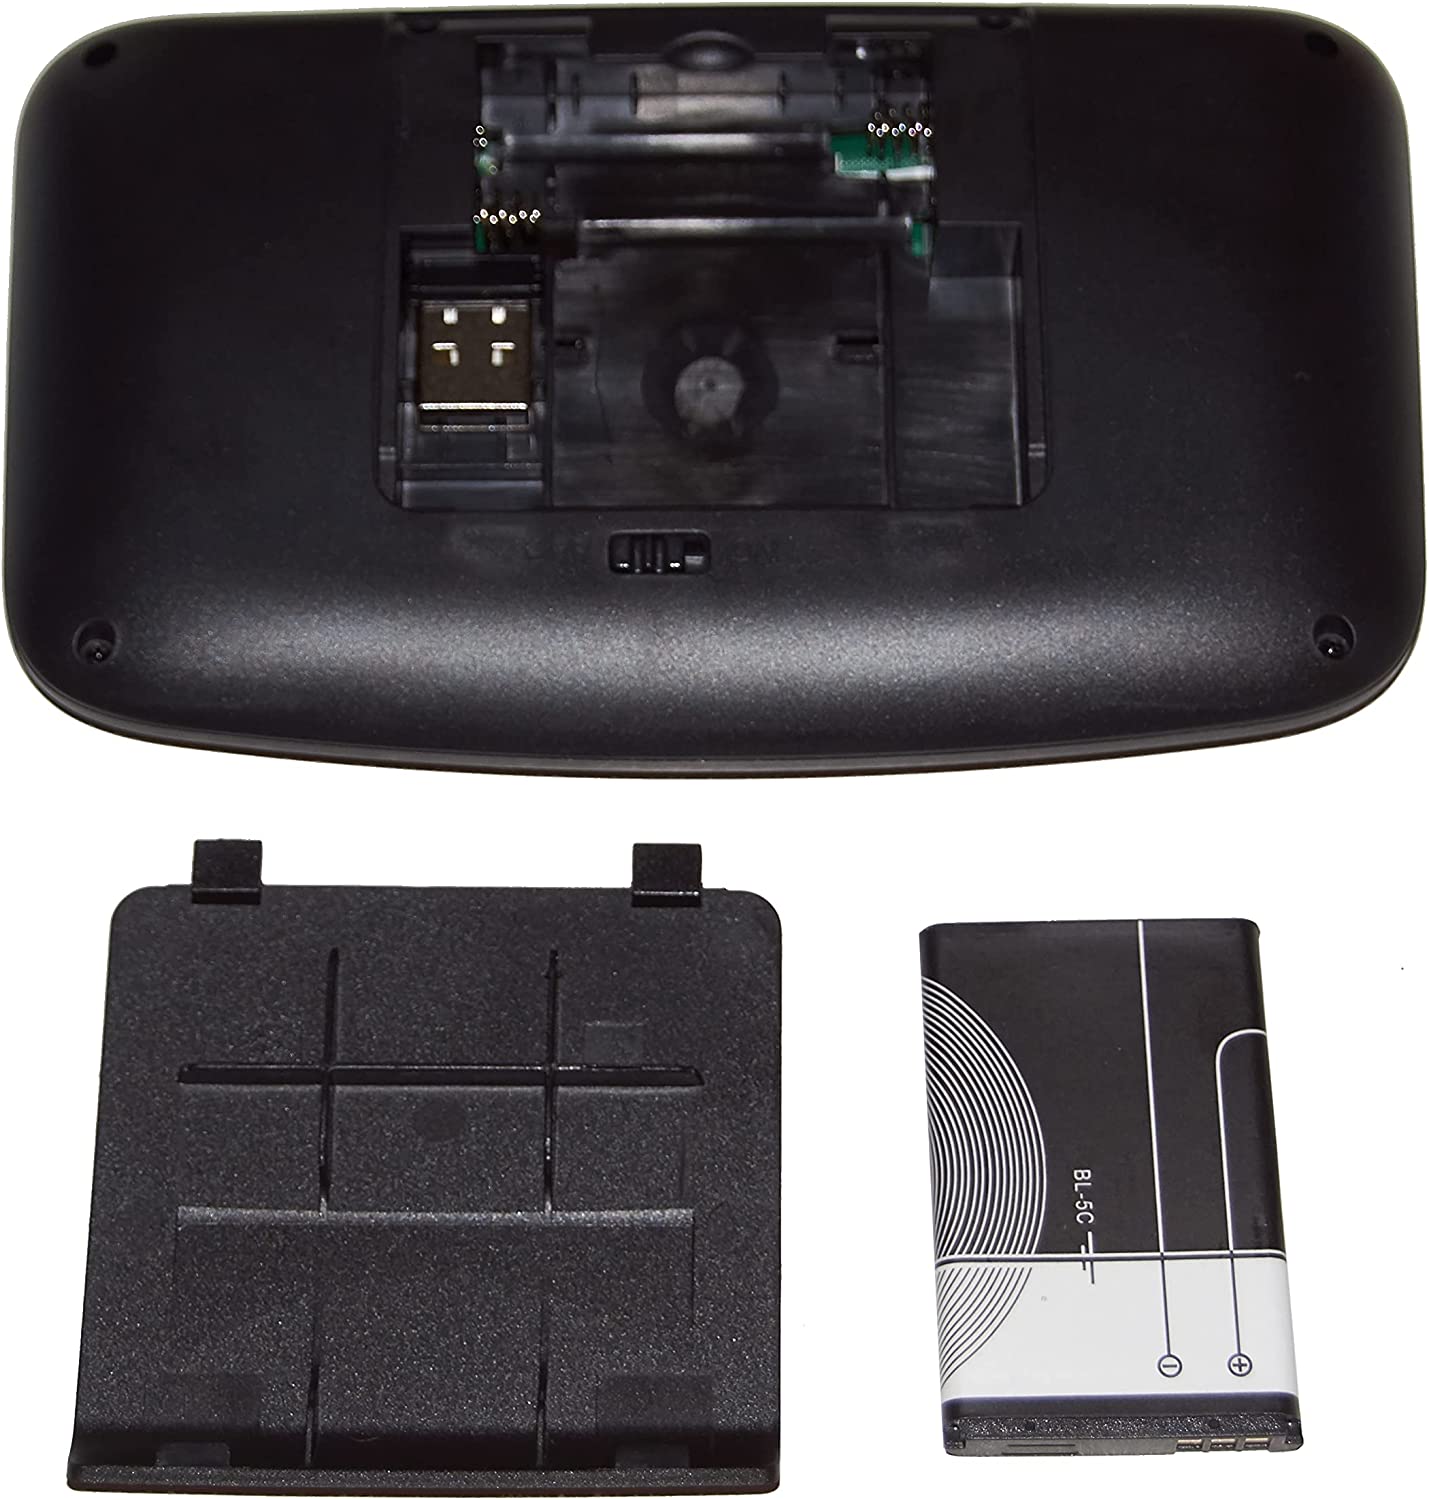 Wireless Mini keyboard with touchpad - Bundle of 10 units